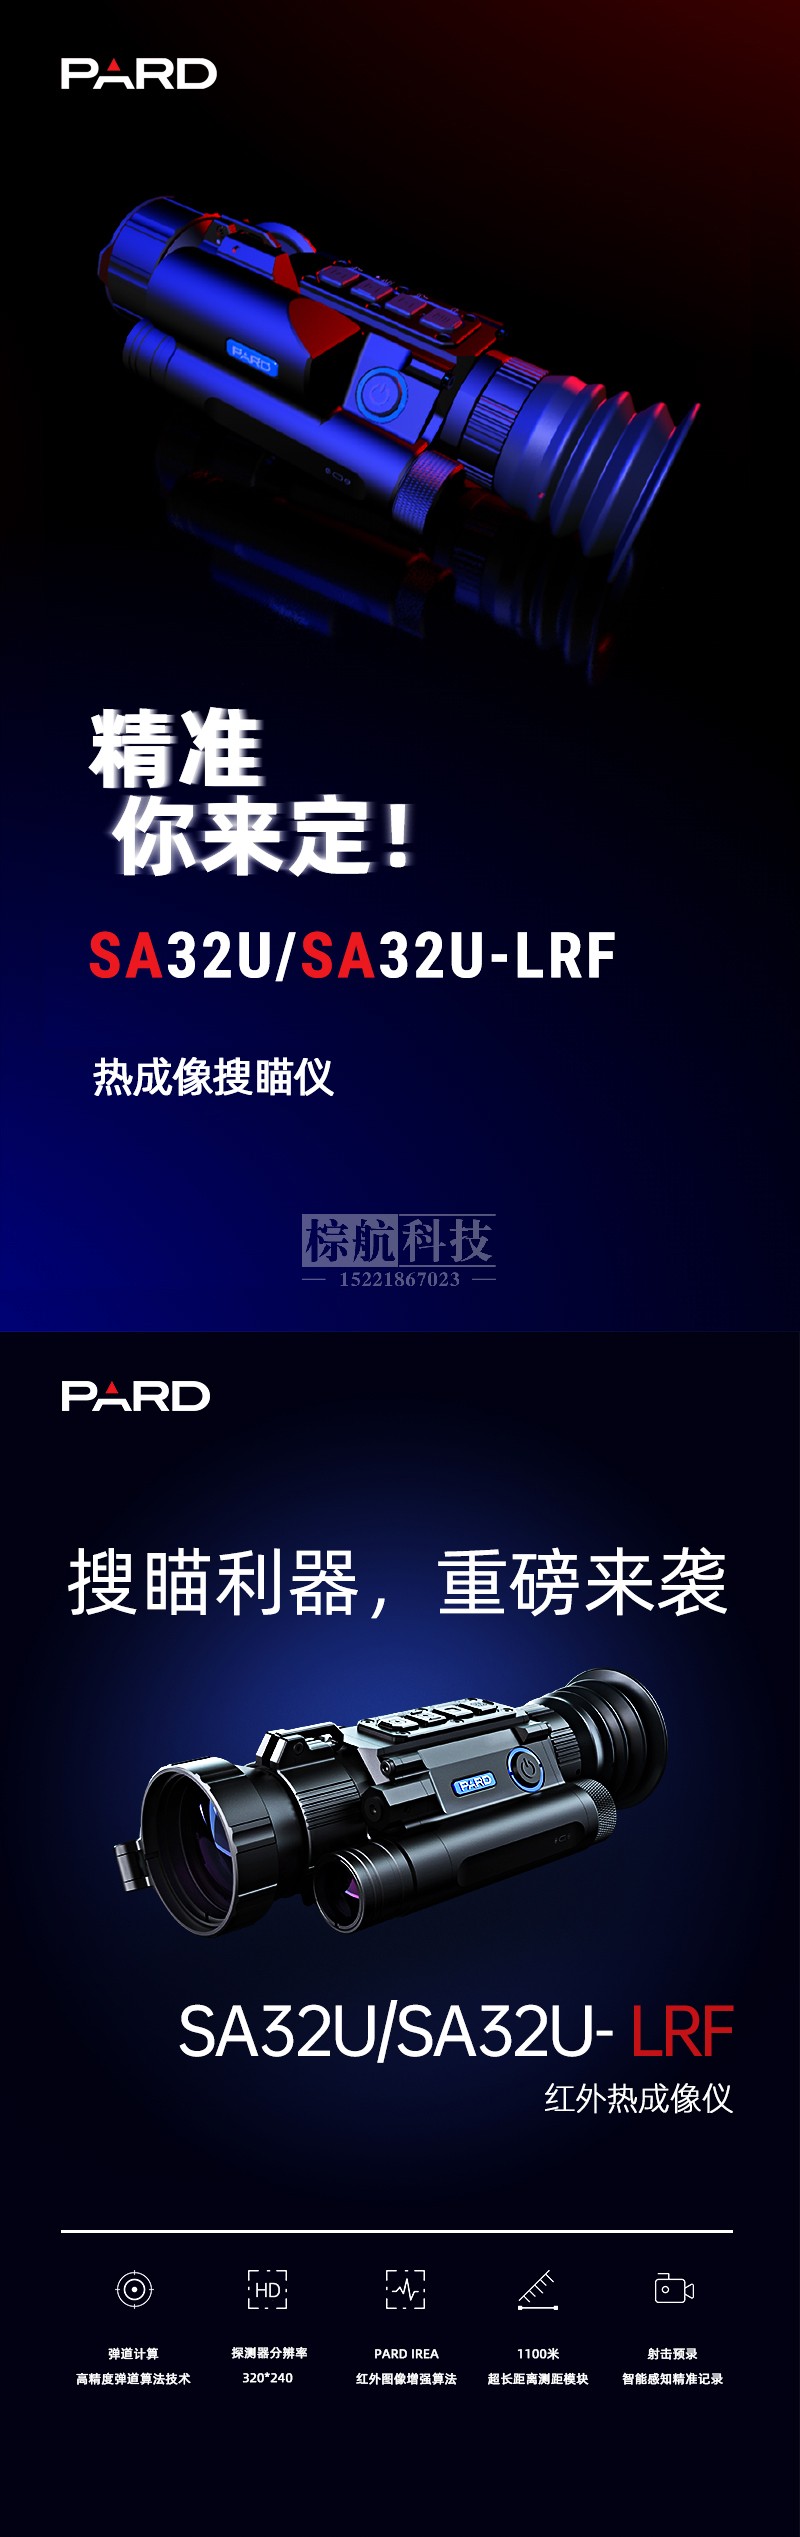 普雷德SA32U243545LRF热成像 产品图.jpg